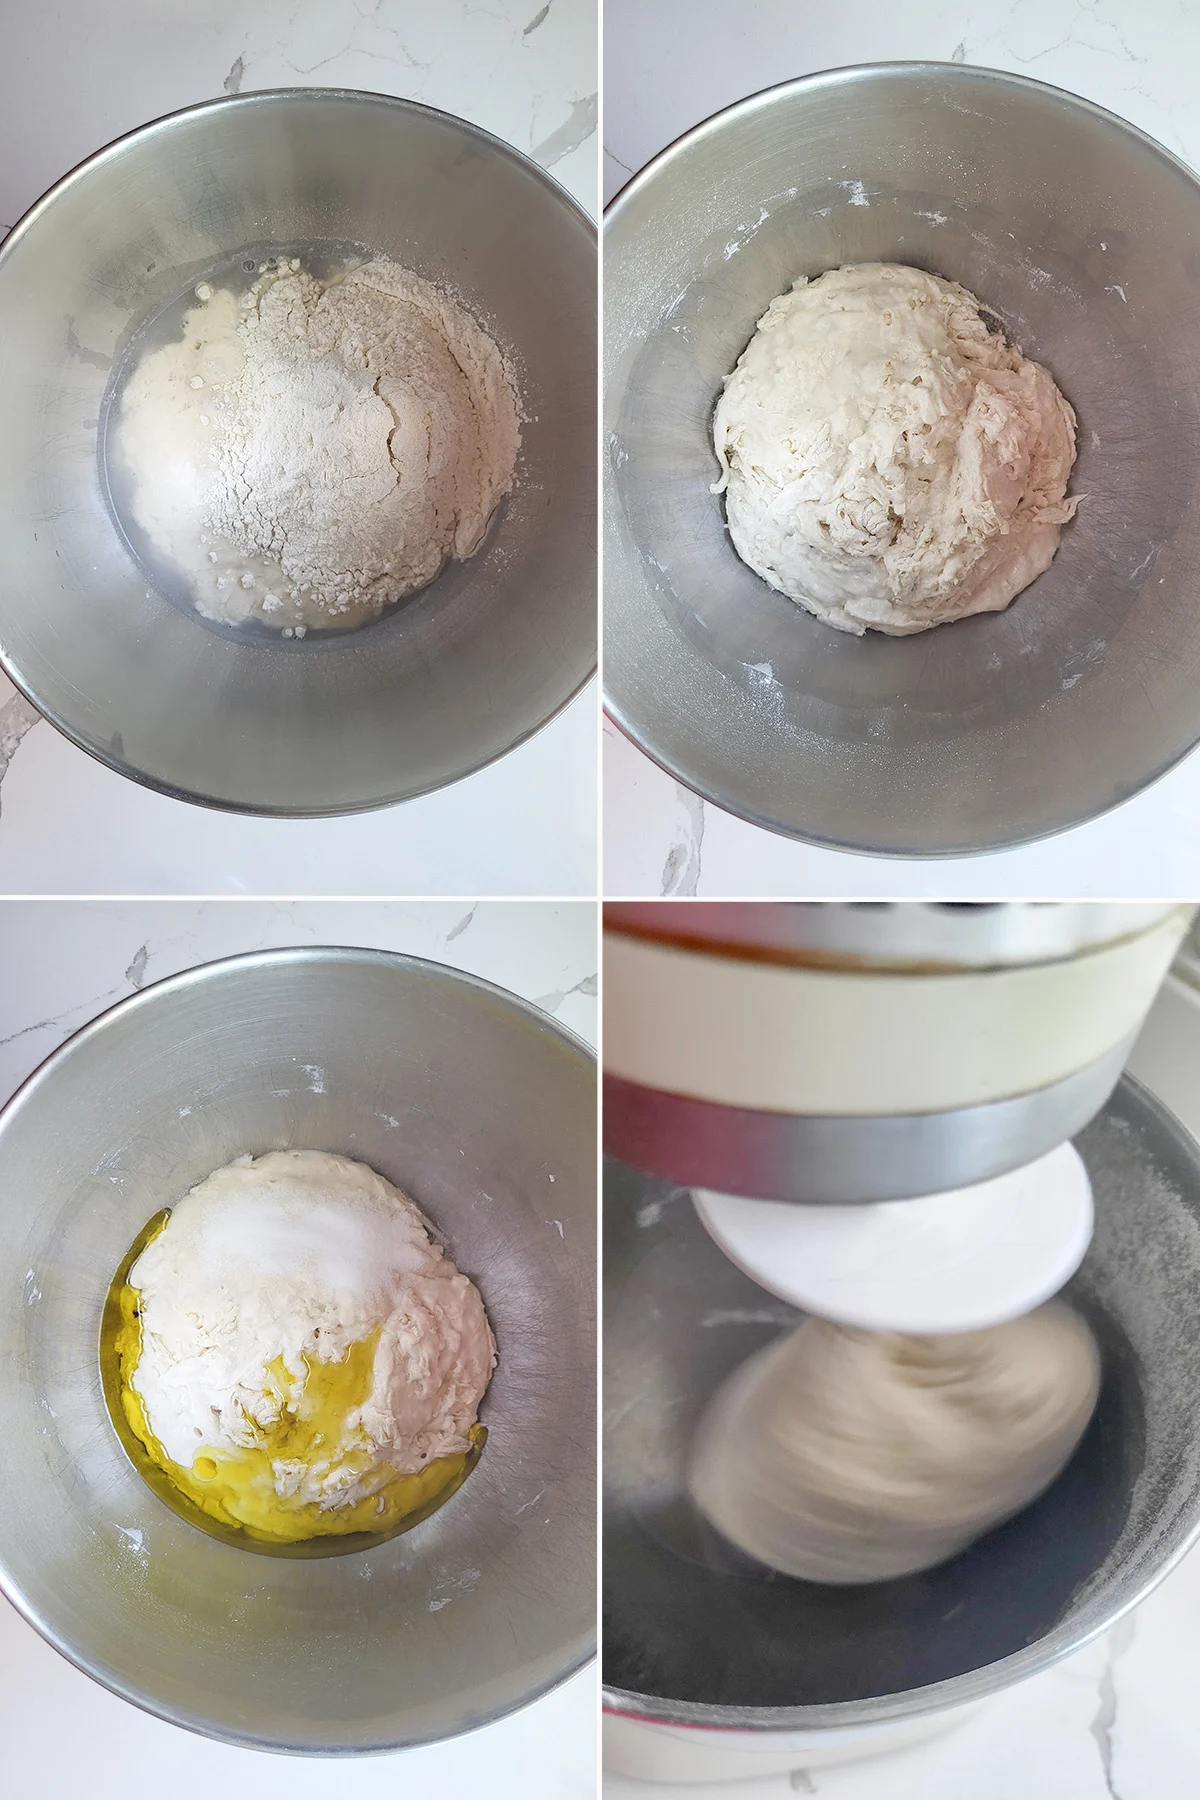 Piza dough in a mixer.